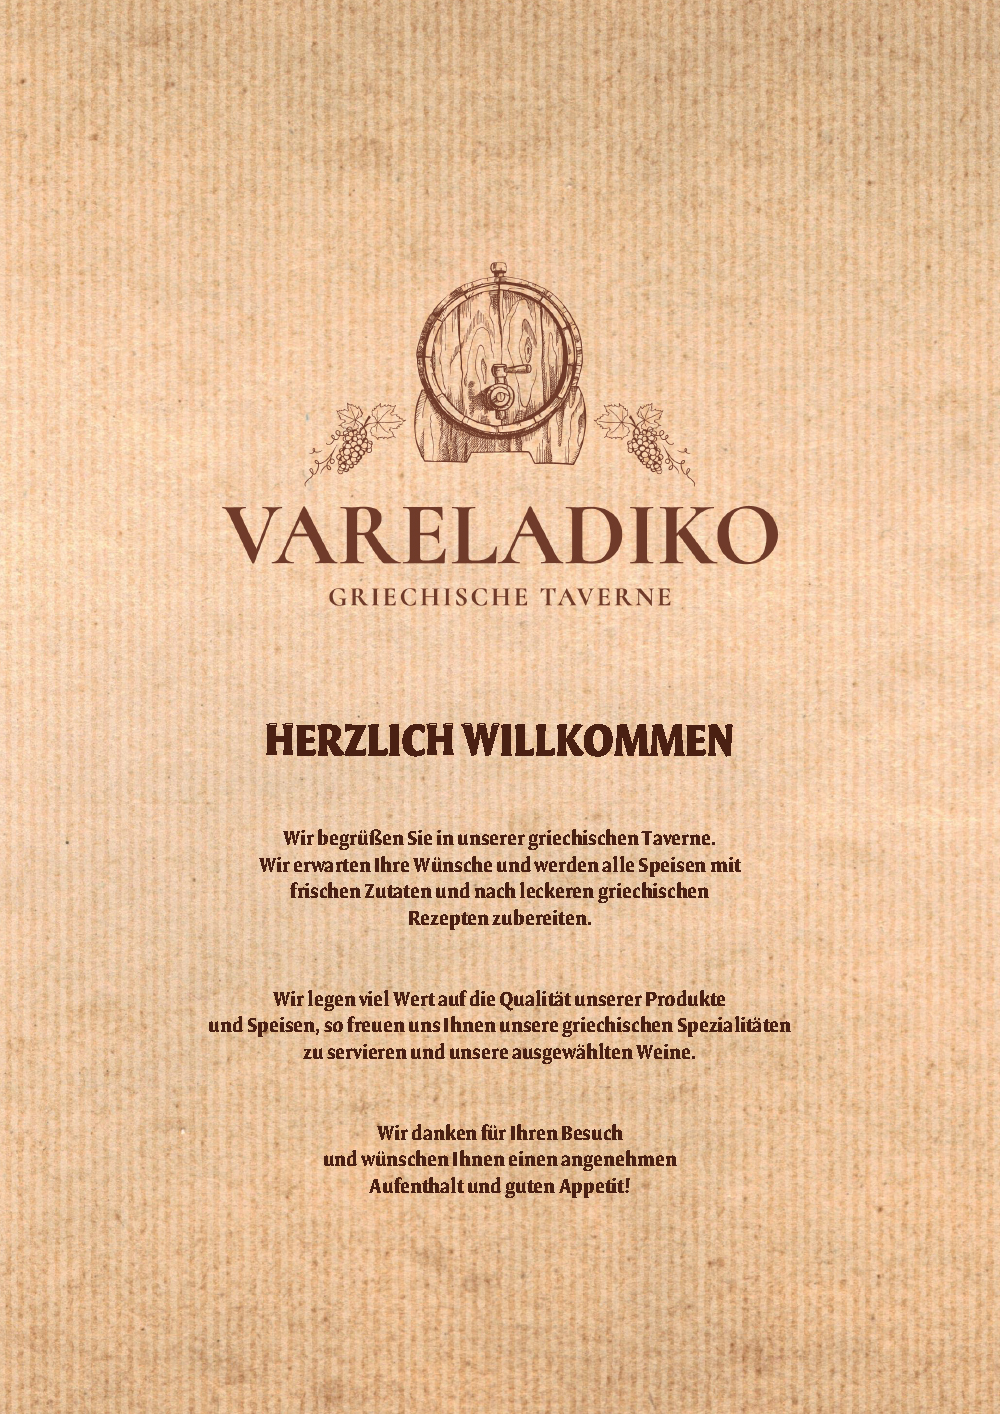 Vareladiko Griechische Taverne Berlin - Charlottenburg Speisekarte